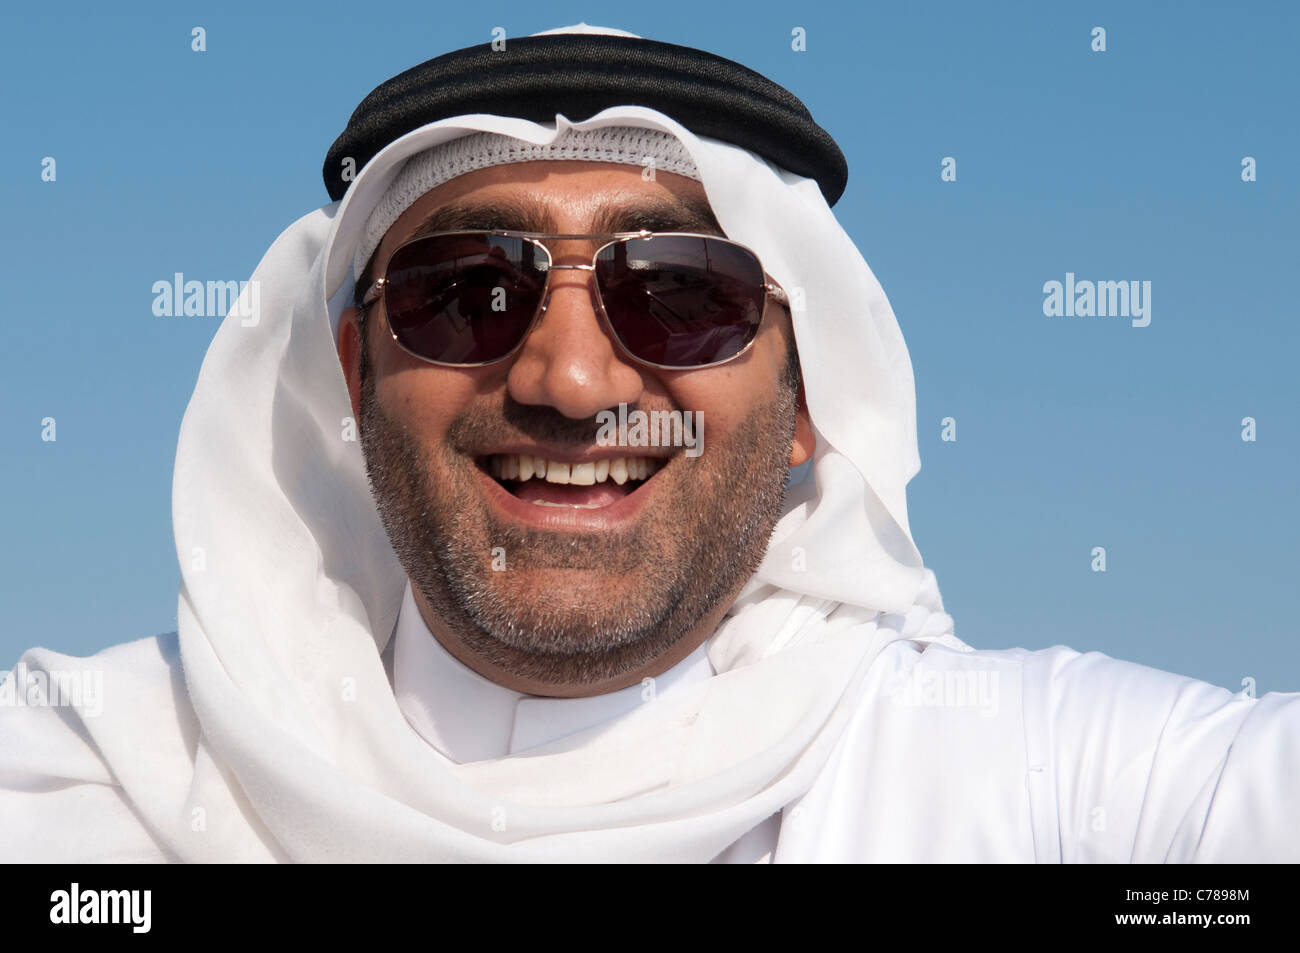 L'homme arabe de Dubaï portant des tenues traditionnelles de dishdasha (robe) et couvre-chef (keffieh) ; Émirats arabes unis. Banque D'Images